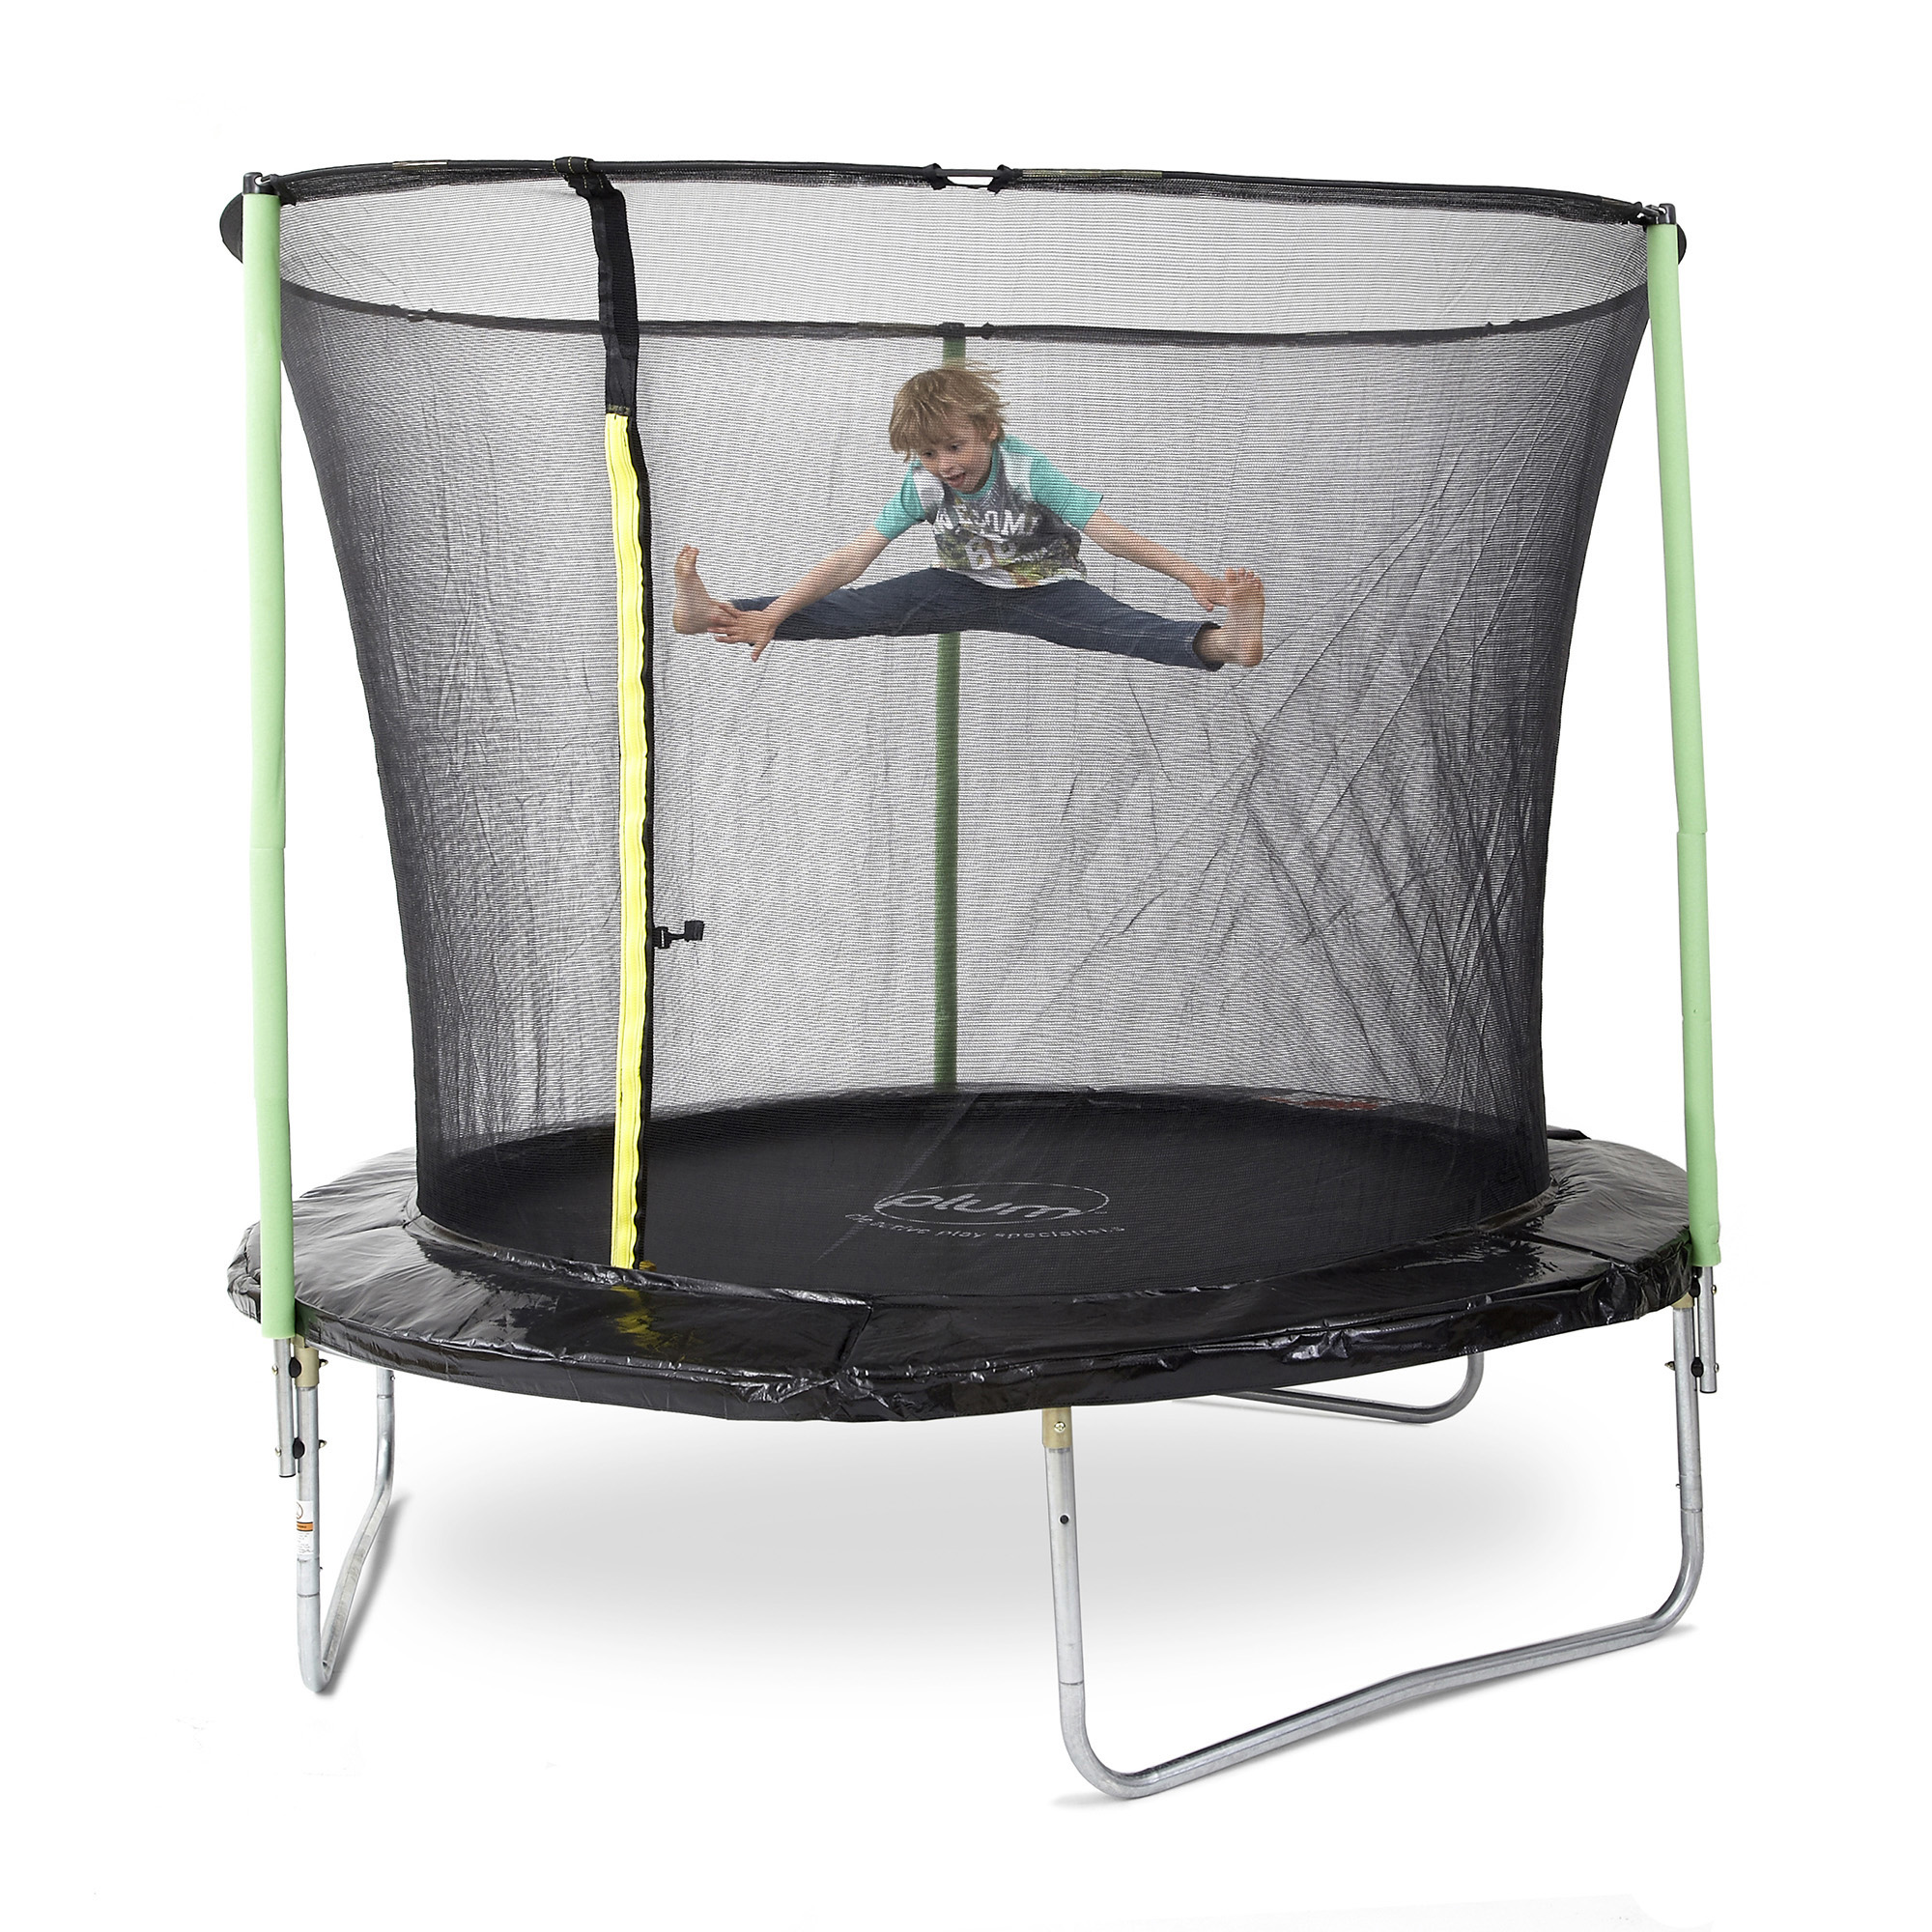 Plum - trampolino elastico bambini con protezioni - diametro 244 cm - SUN&SPORT